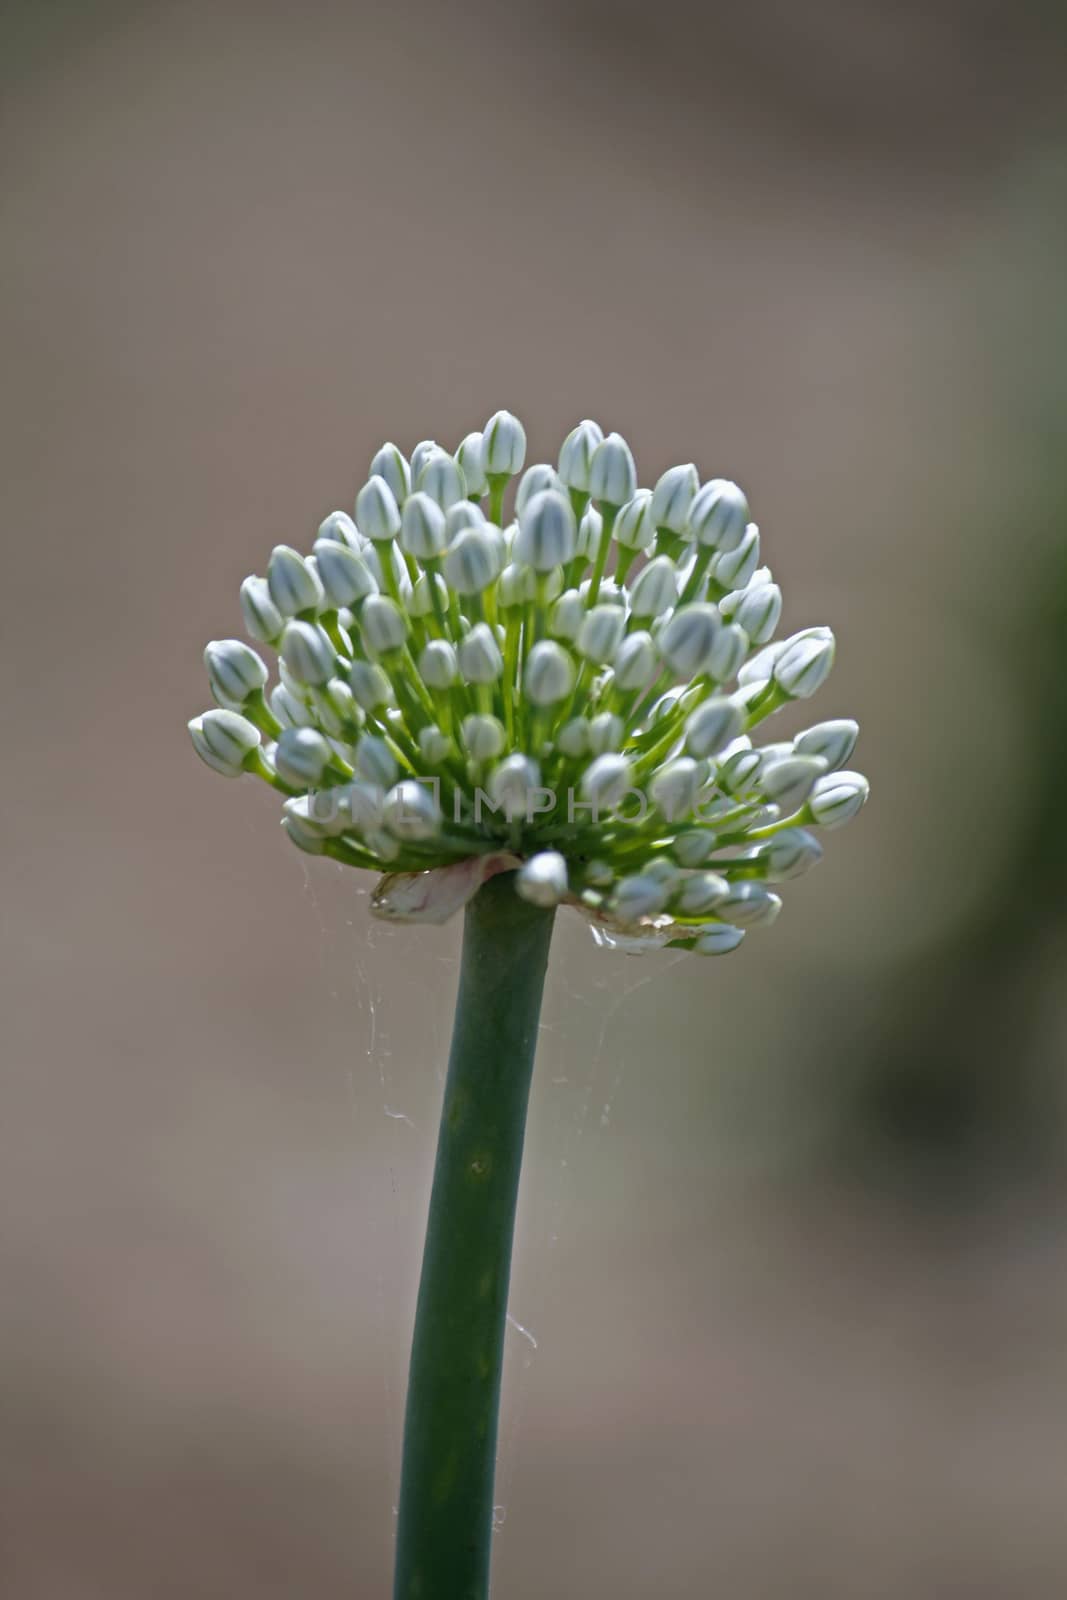 Flower of Onion, Allium cepa by yands